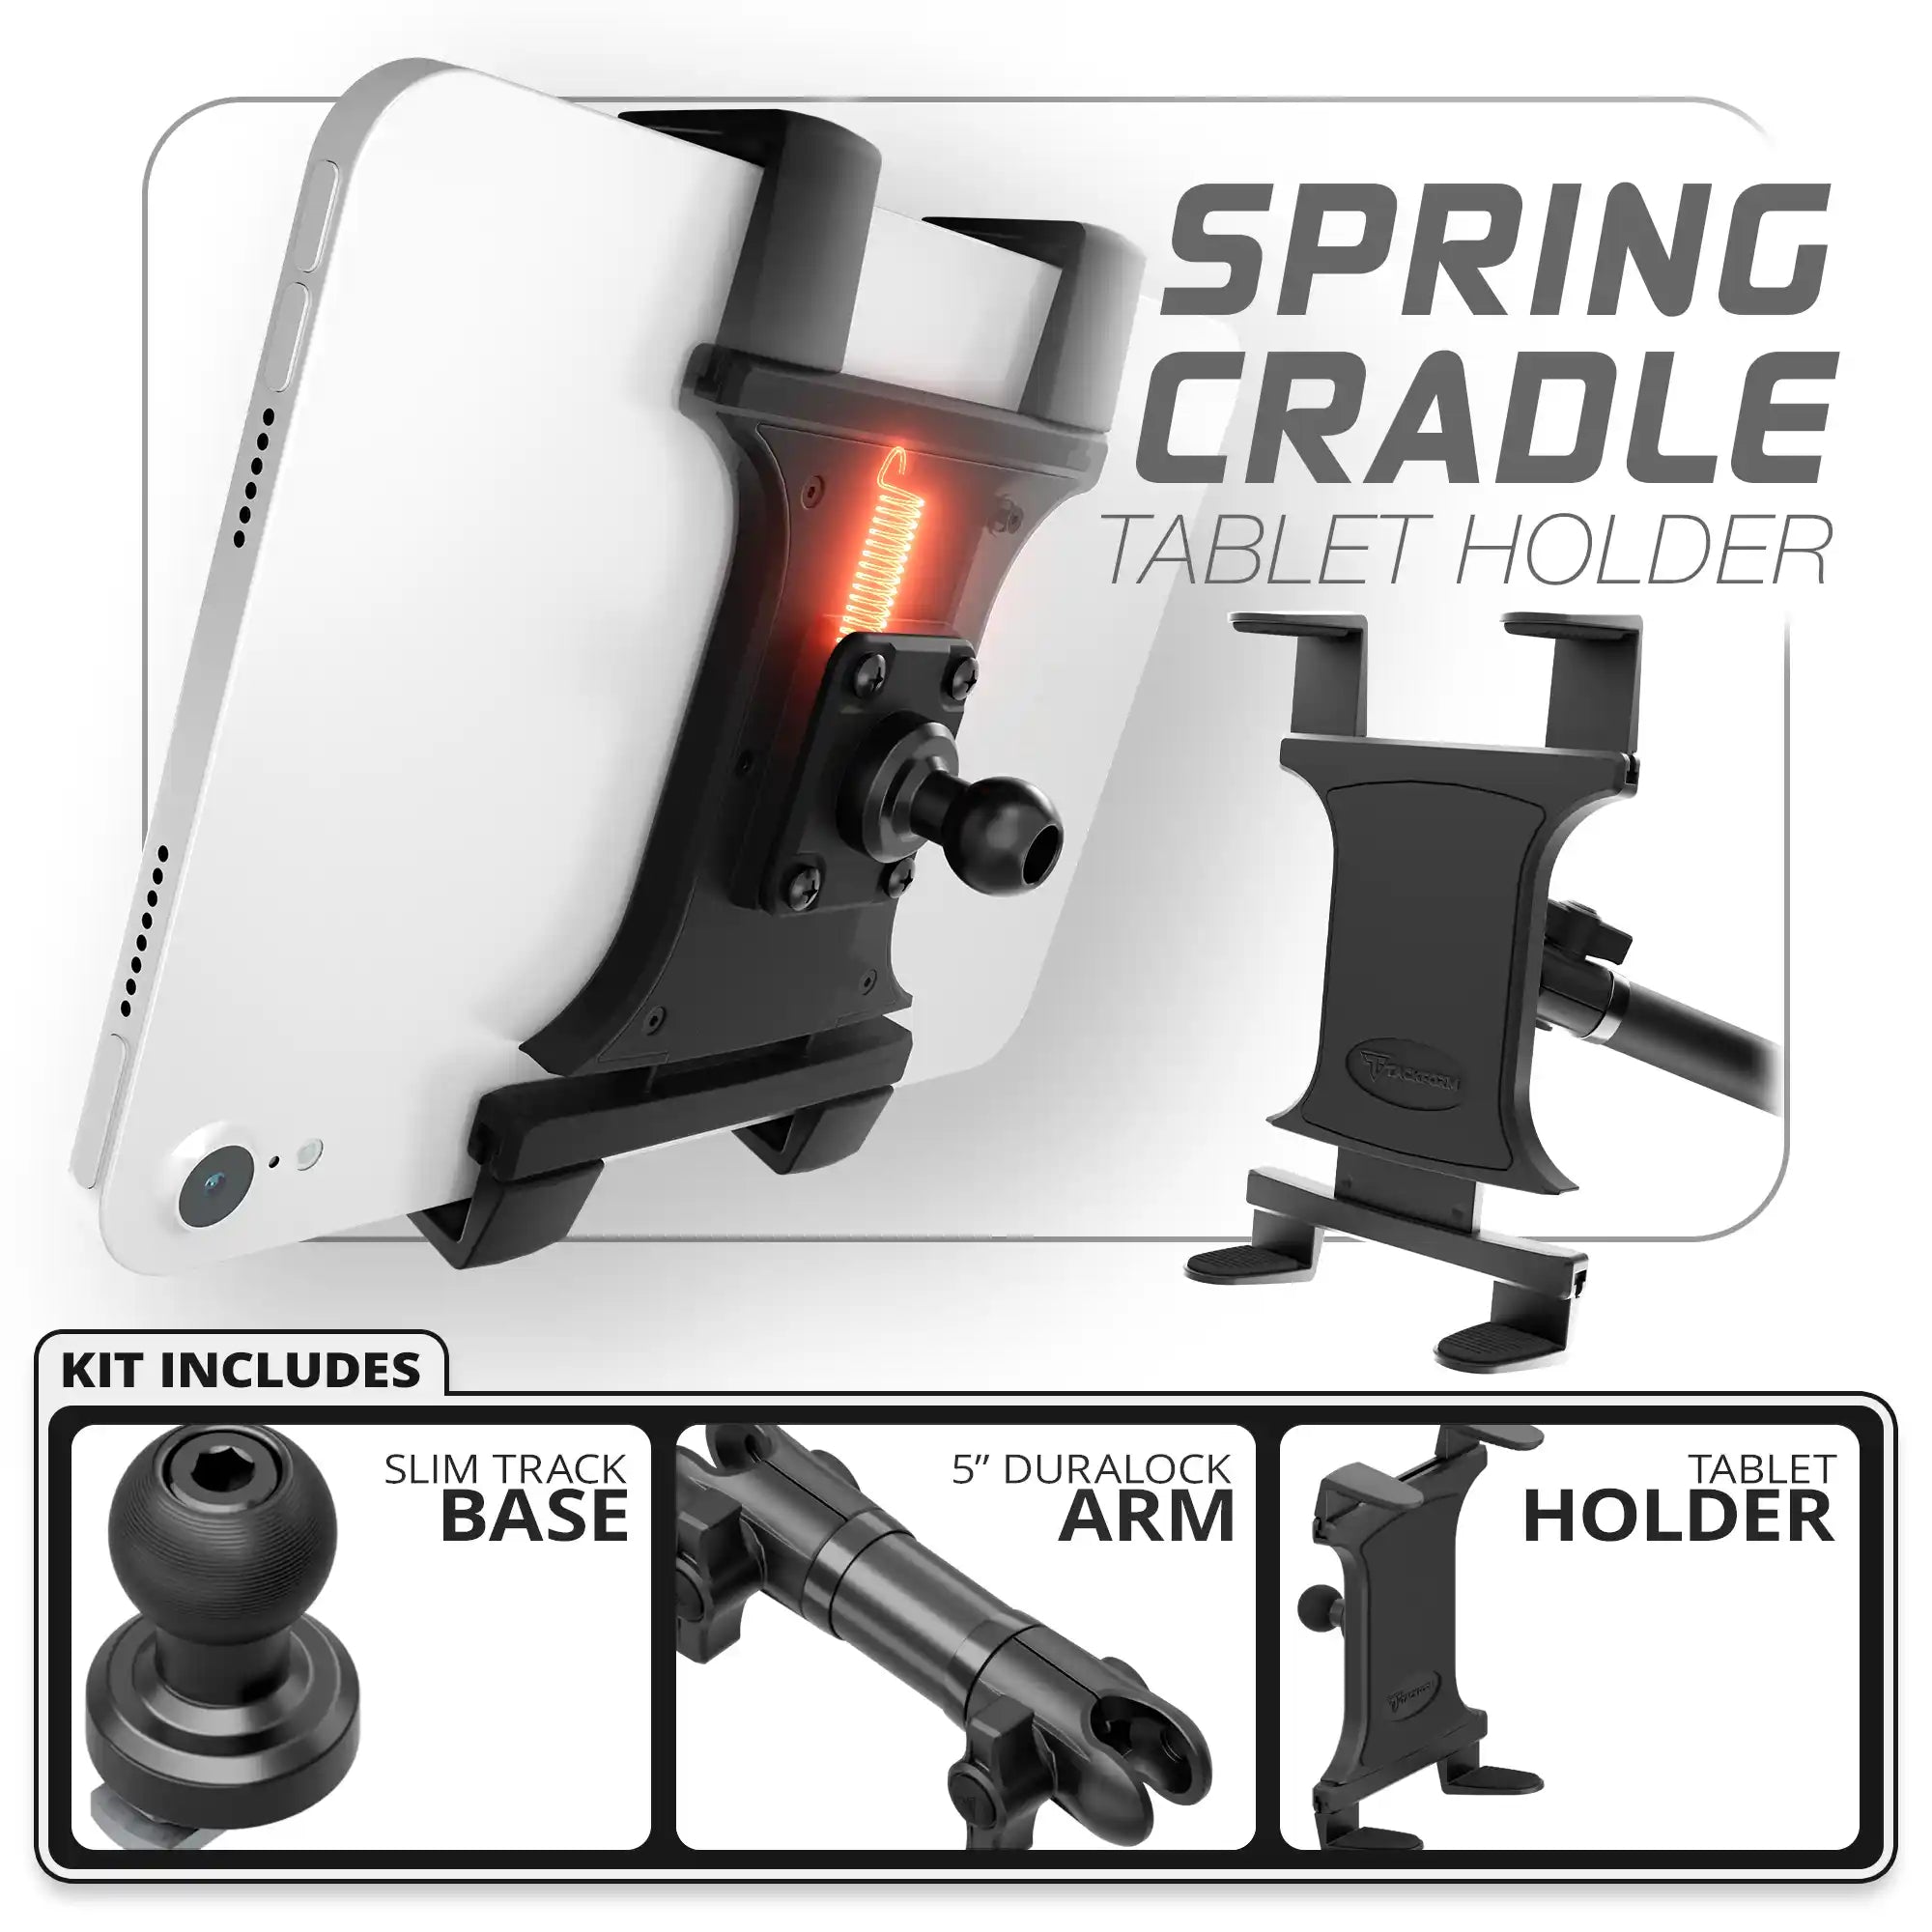 Tablet Spring Cradle | Slim Track Base | 5" DuraLock Arm